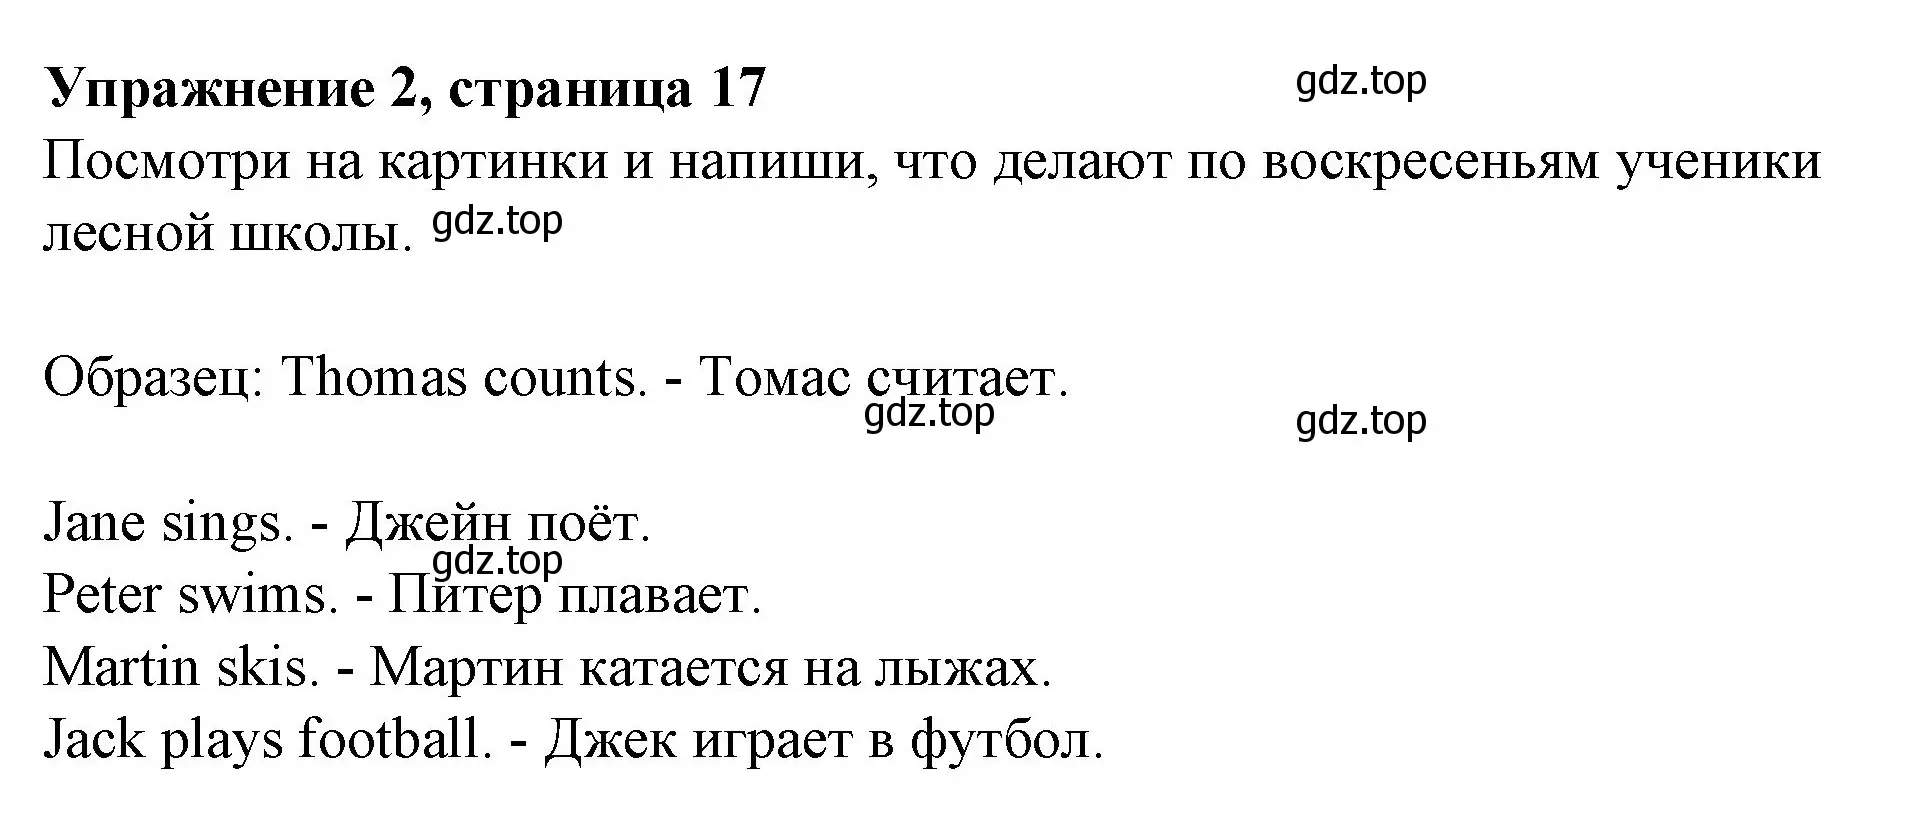 Решение номер 2 (страница 17) гдз по английскому языку 3 класс Биболетова, Денисенко, рабочая тетрадь